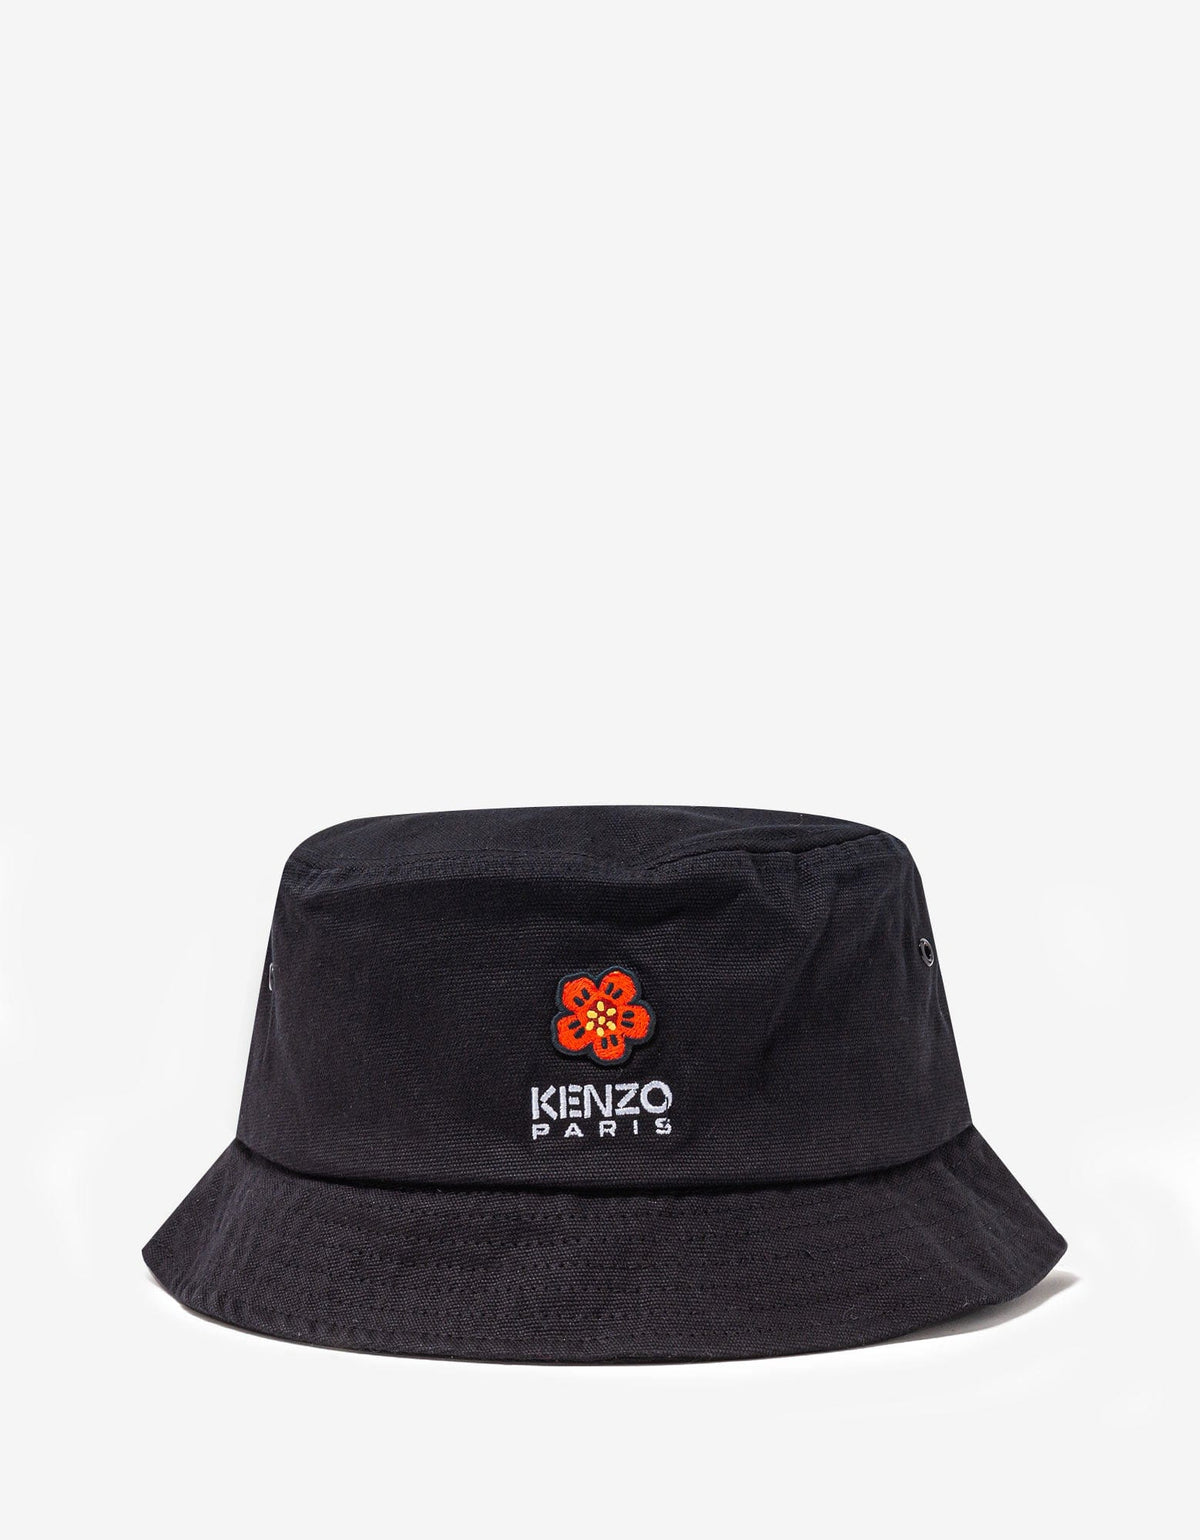 Kenzo Black 'Boke Flower' Crest Bucket Hat